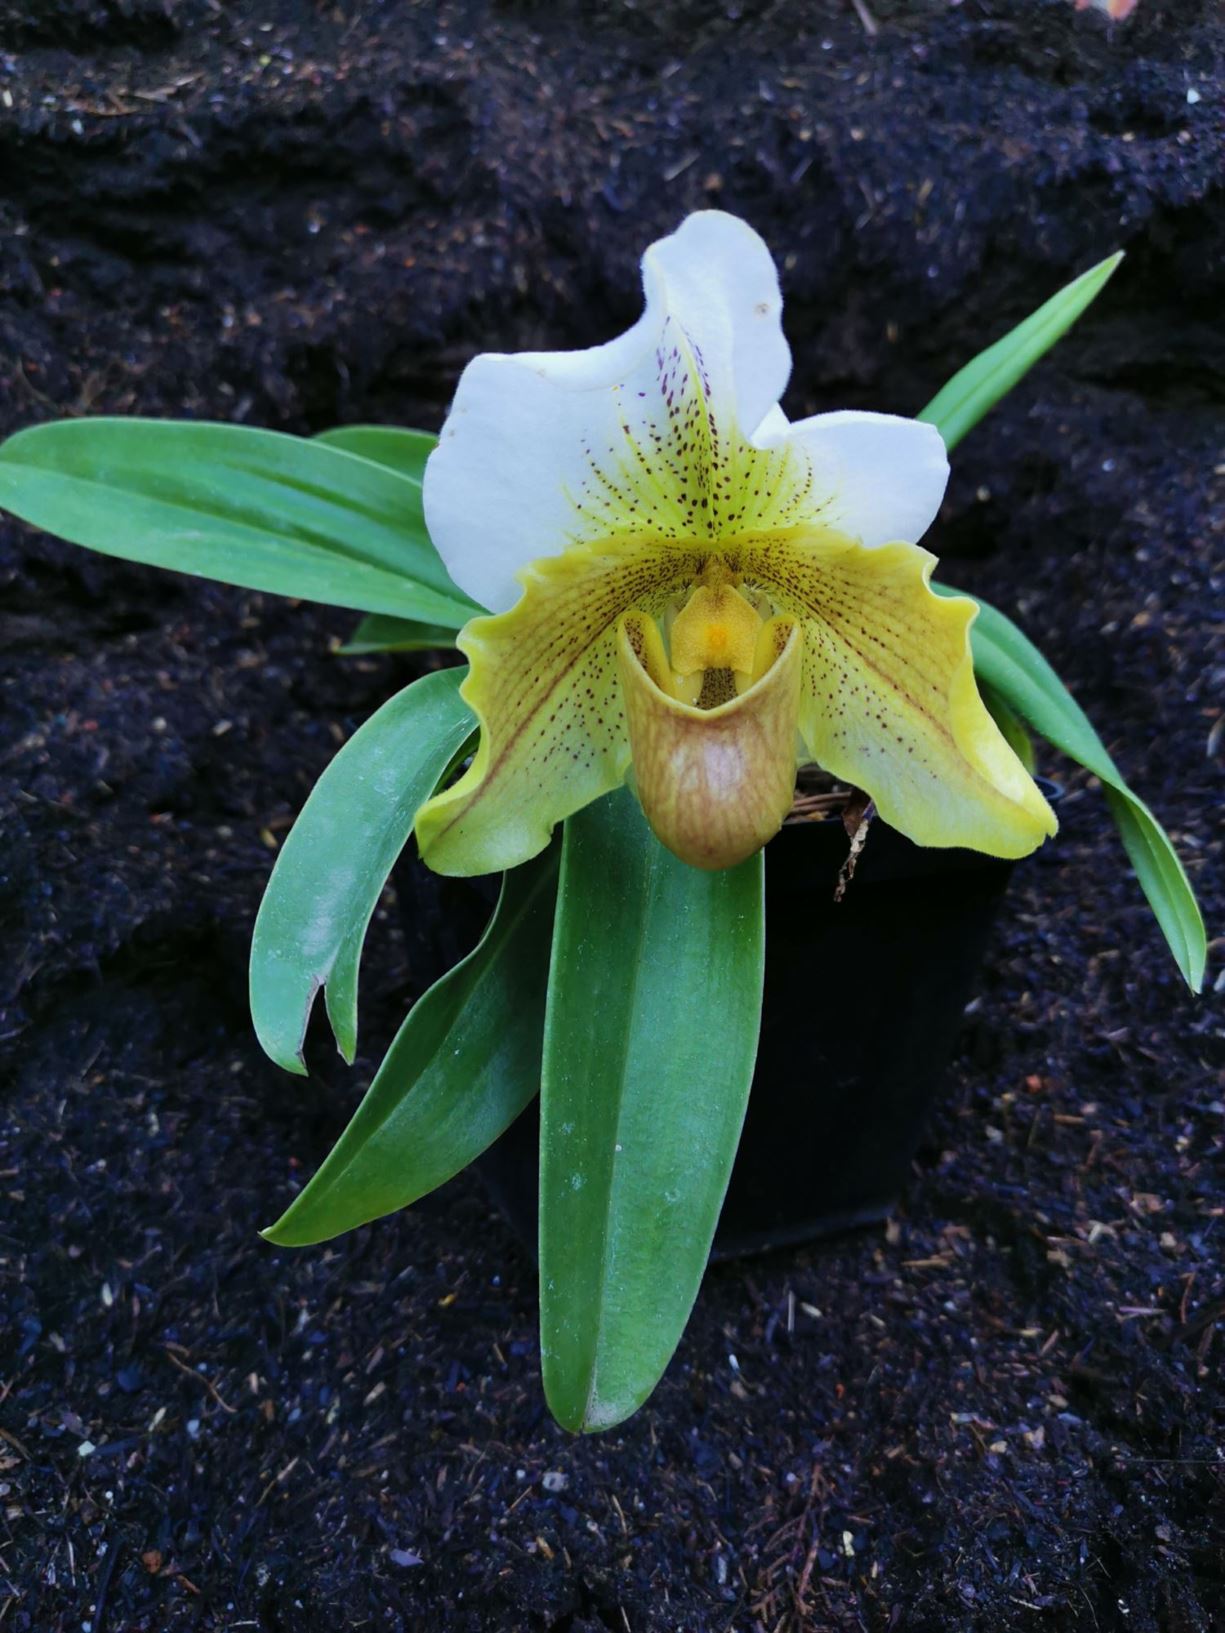 Paphiopedilum sp. - slipper orchids